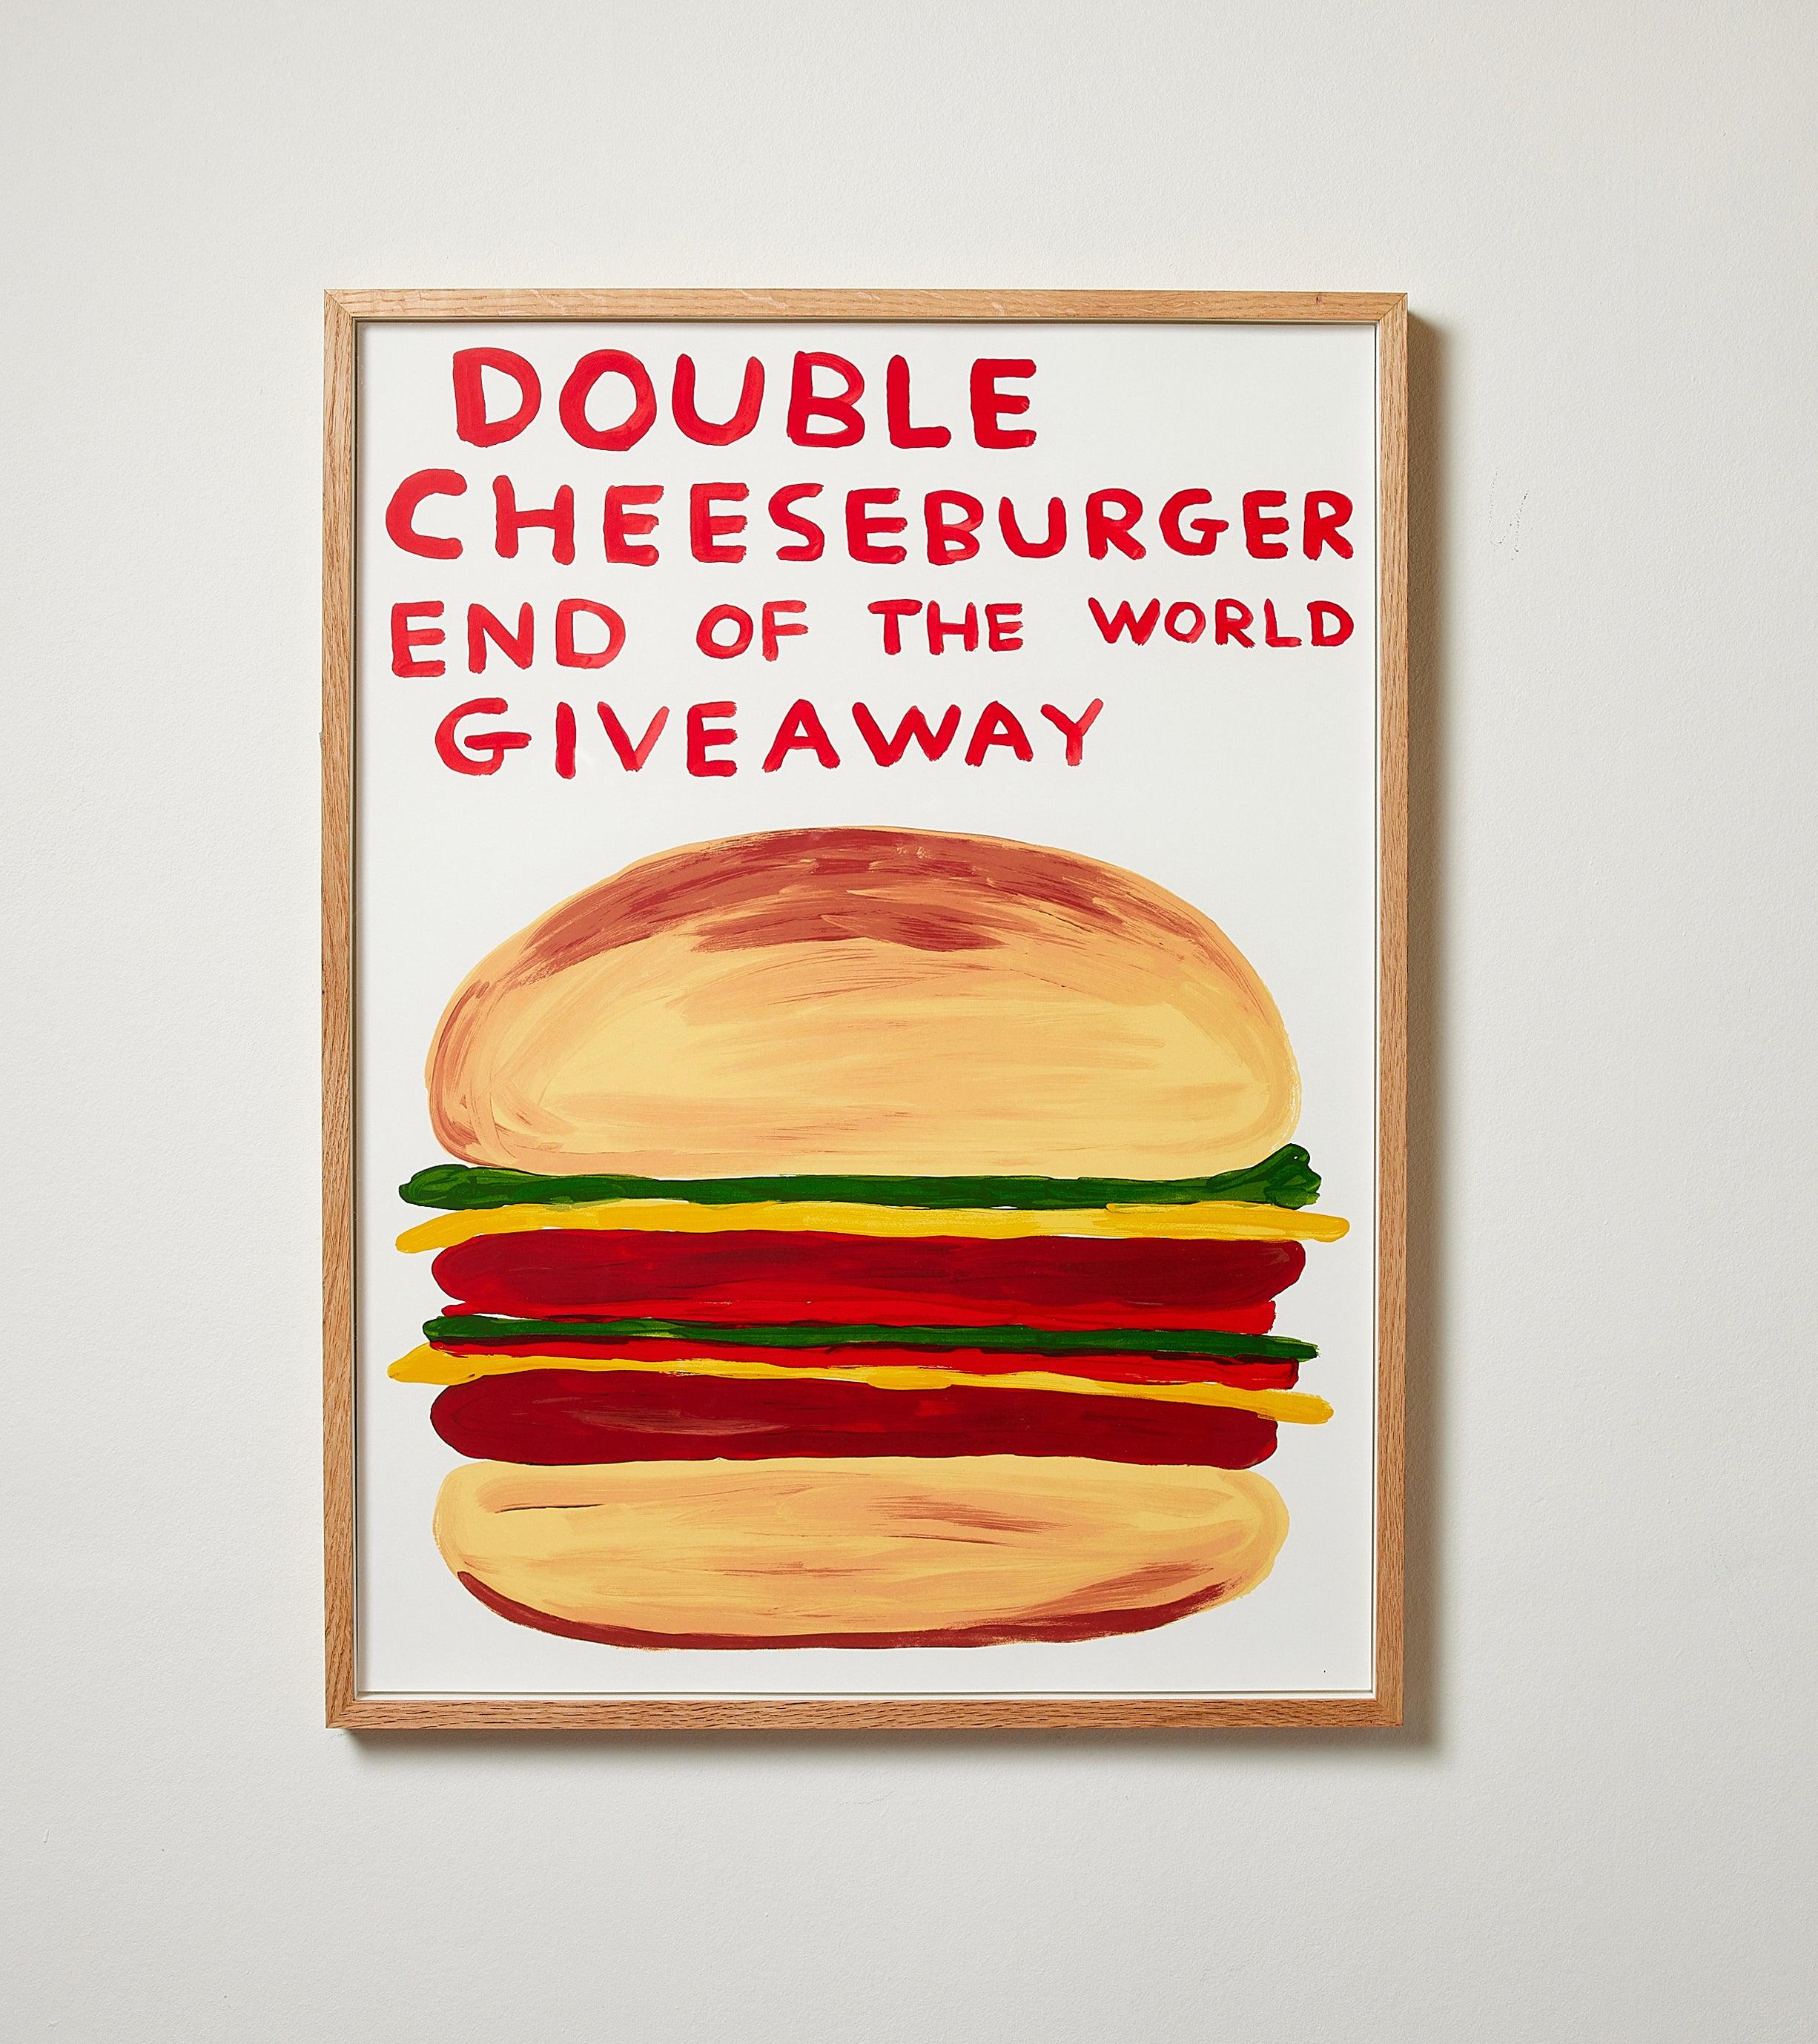 Double Cheeseburger End of the World Giveaway – Siebdruck, Essen, von Shrigley – Print von David Shrigley